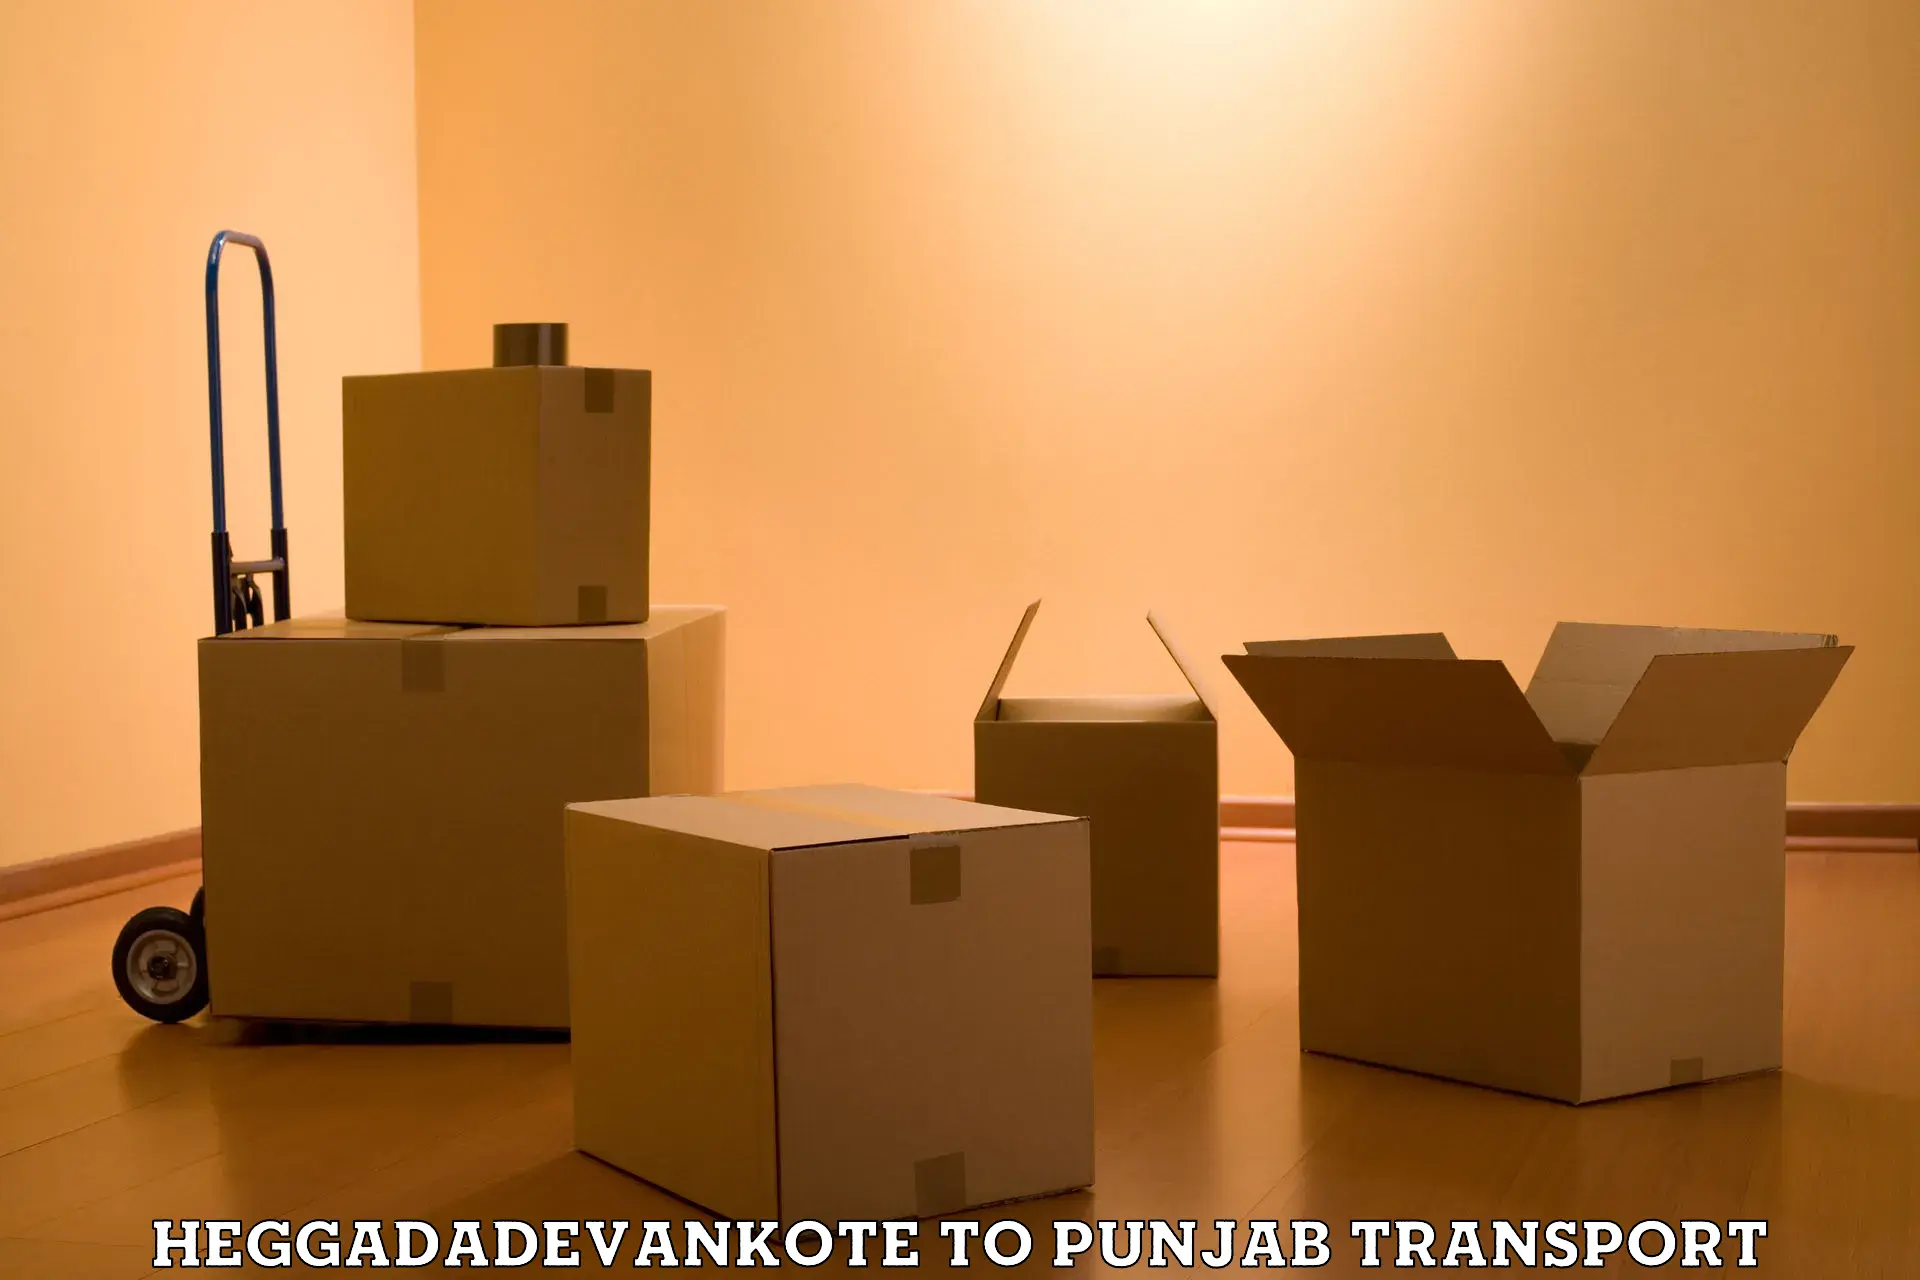 Vehicle parcel service Heggadadevankote to Punjab